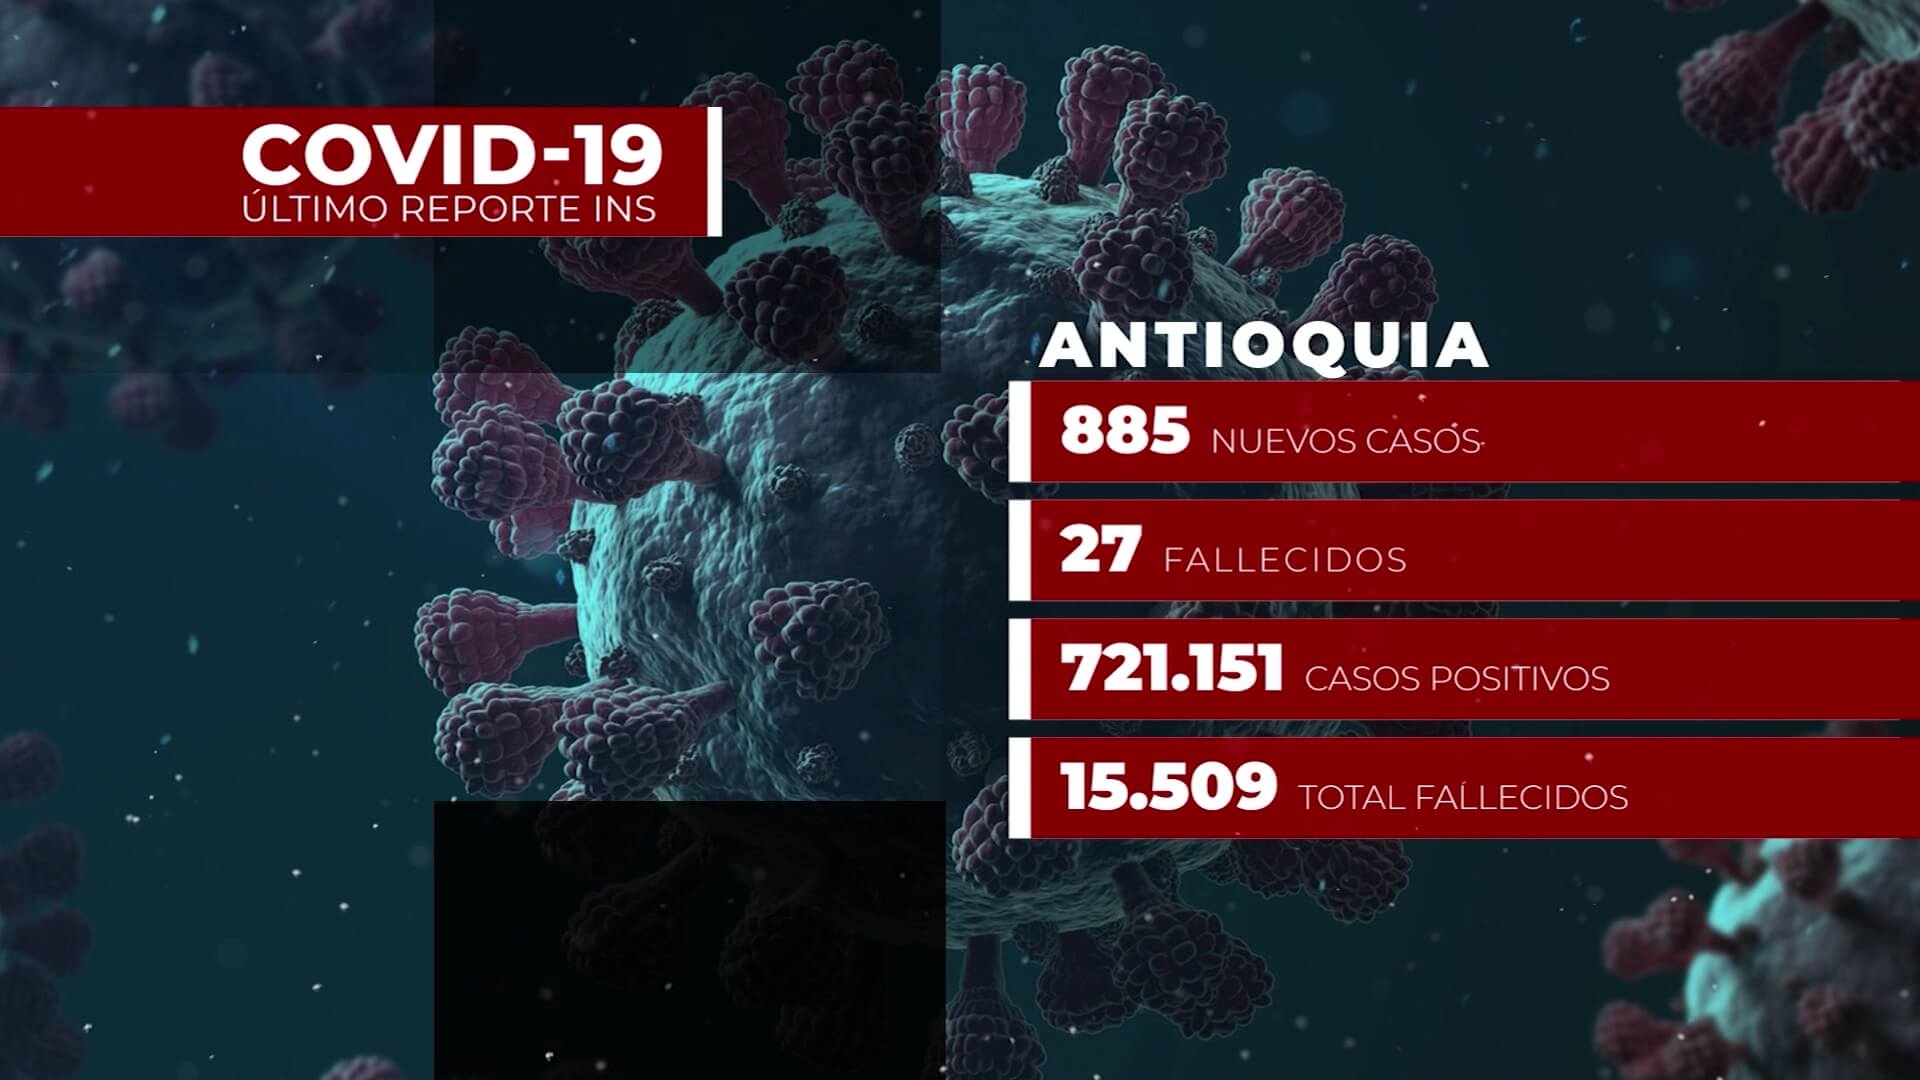 885 nuevos contagios de Covid-19 en Antioquia